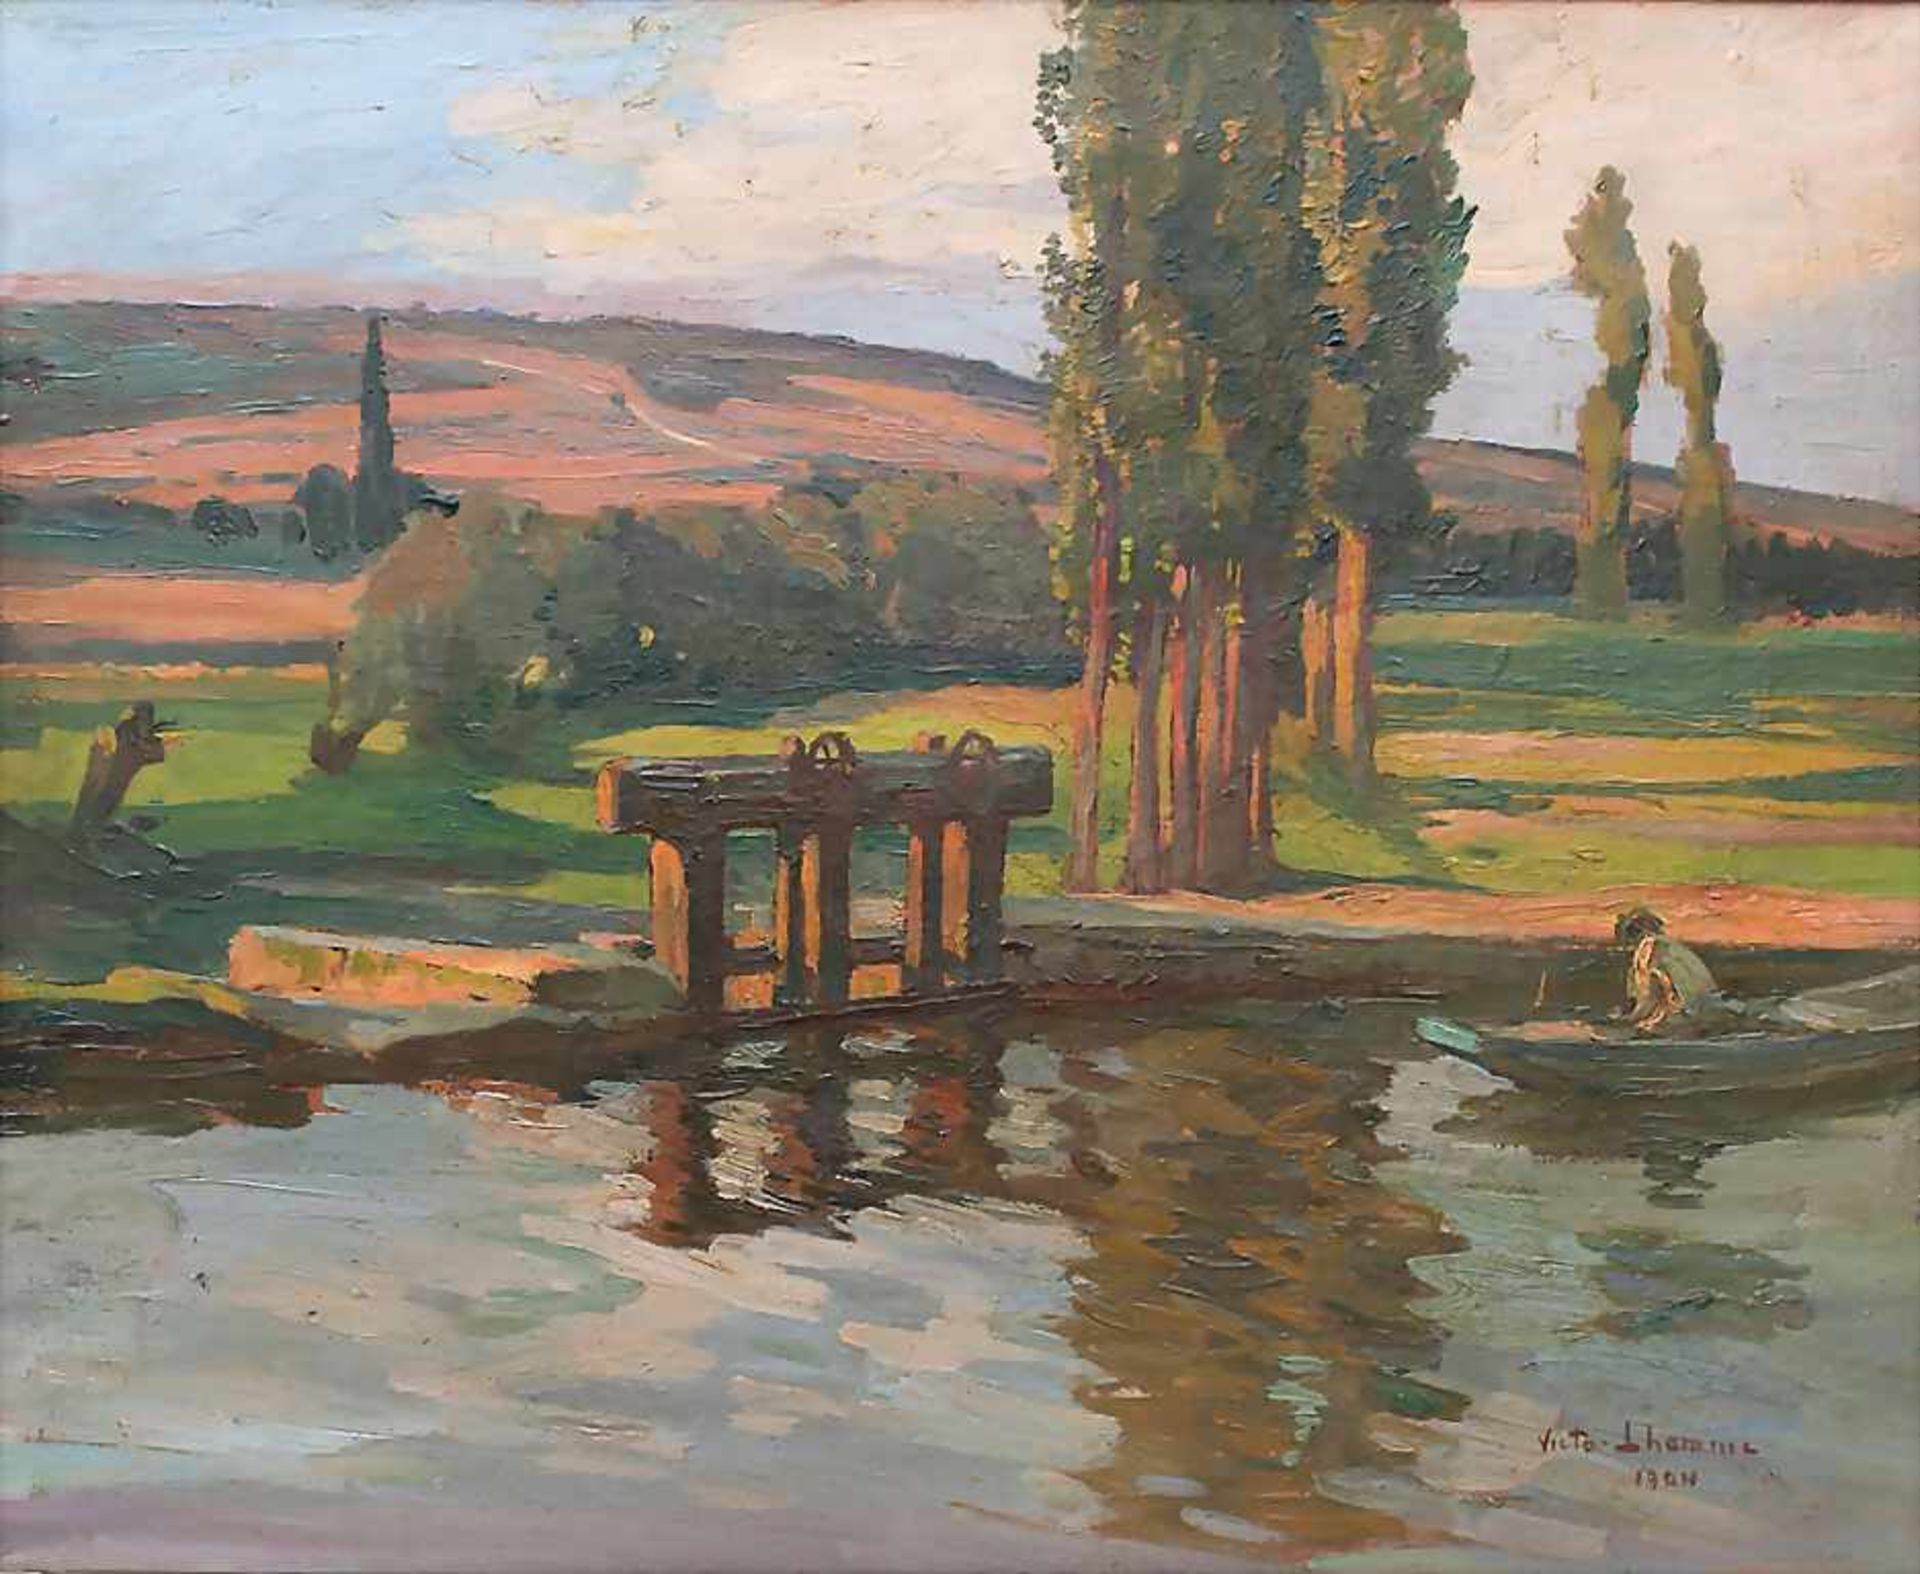 Victor Lhomme (1870-1957), 'Landschaft mit Wehr und Boot im Abendlicht' / 'A landscape with a weir